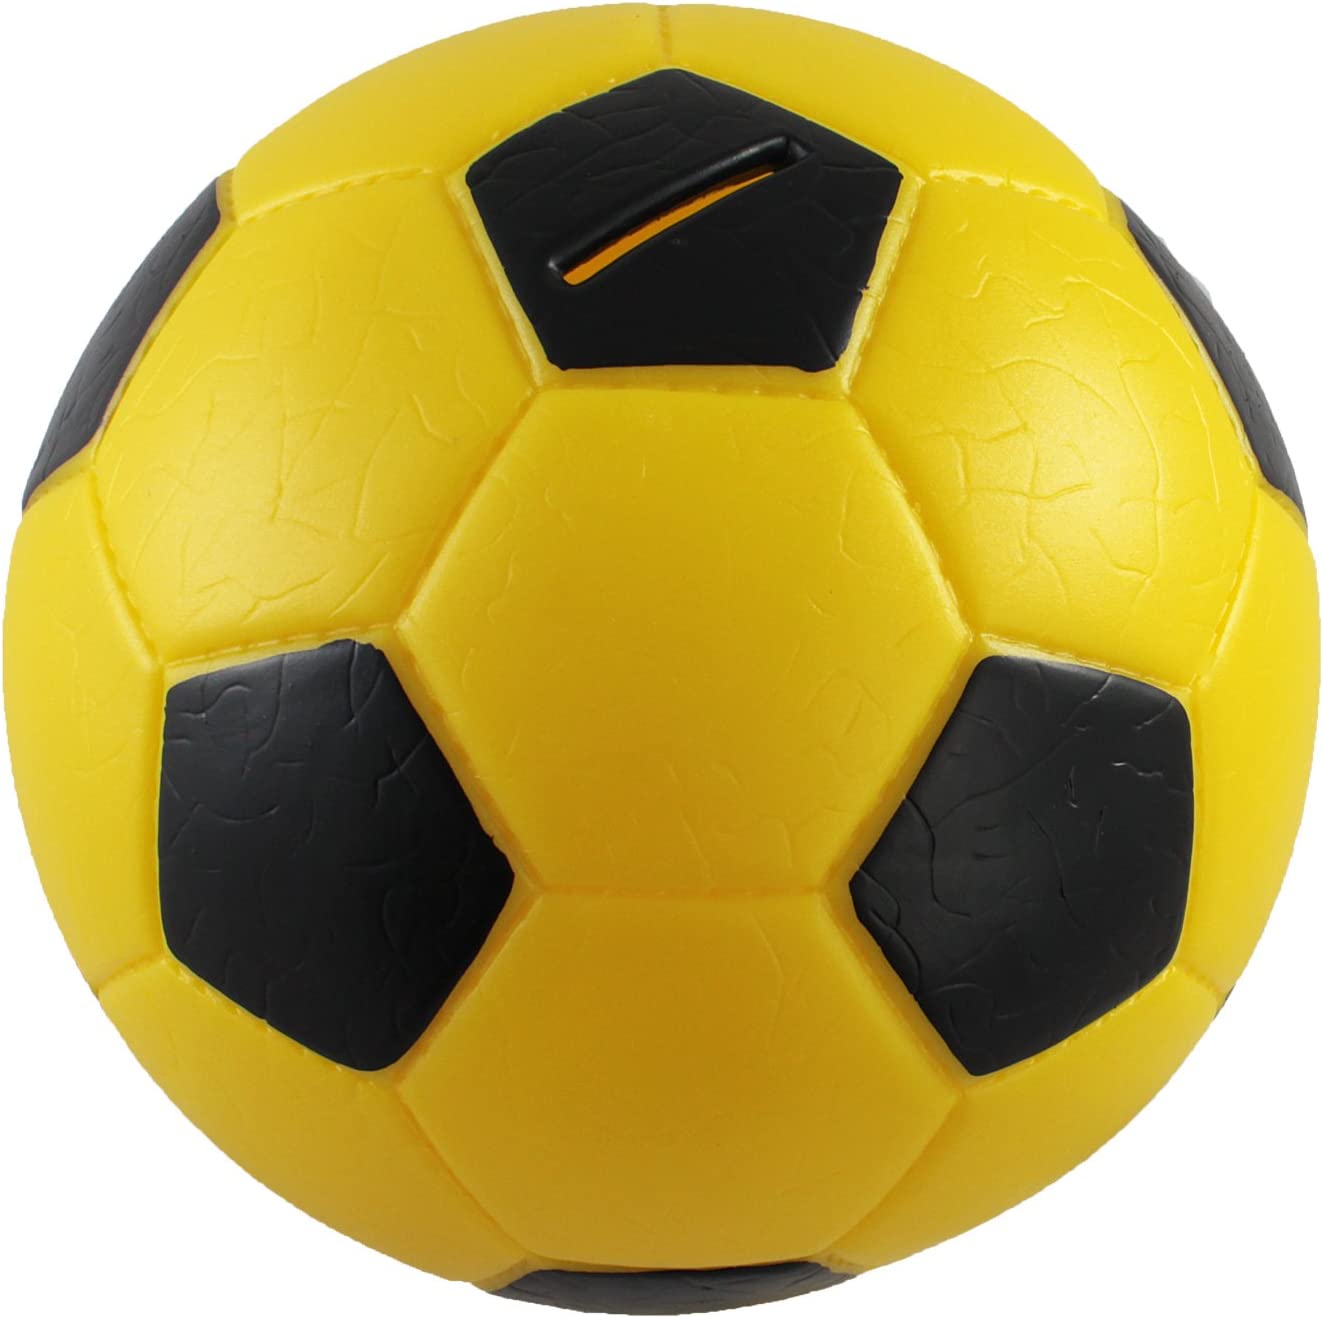 HMF Spardose Fußball Lederoptik Ø15cm gelb/weiß